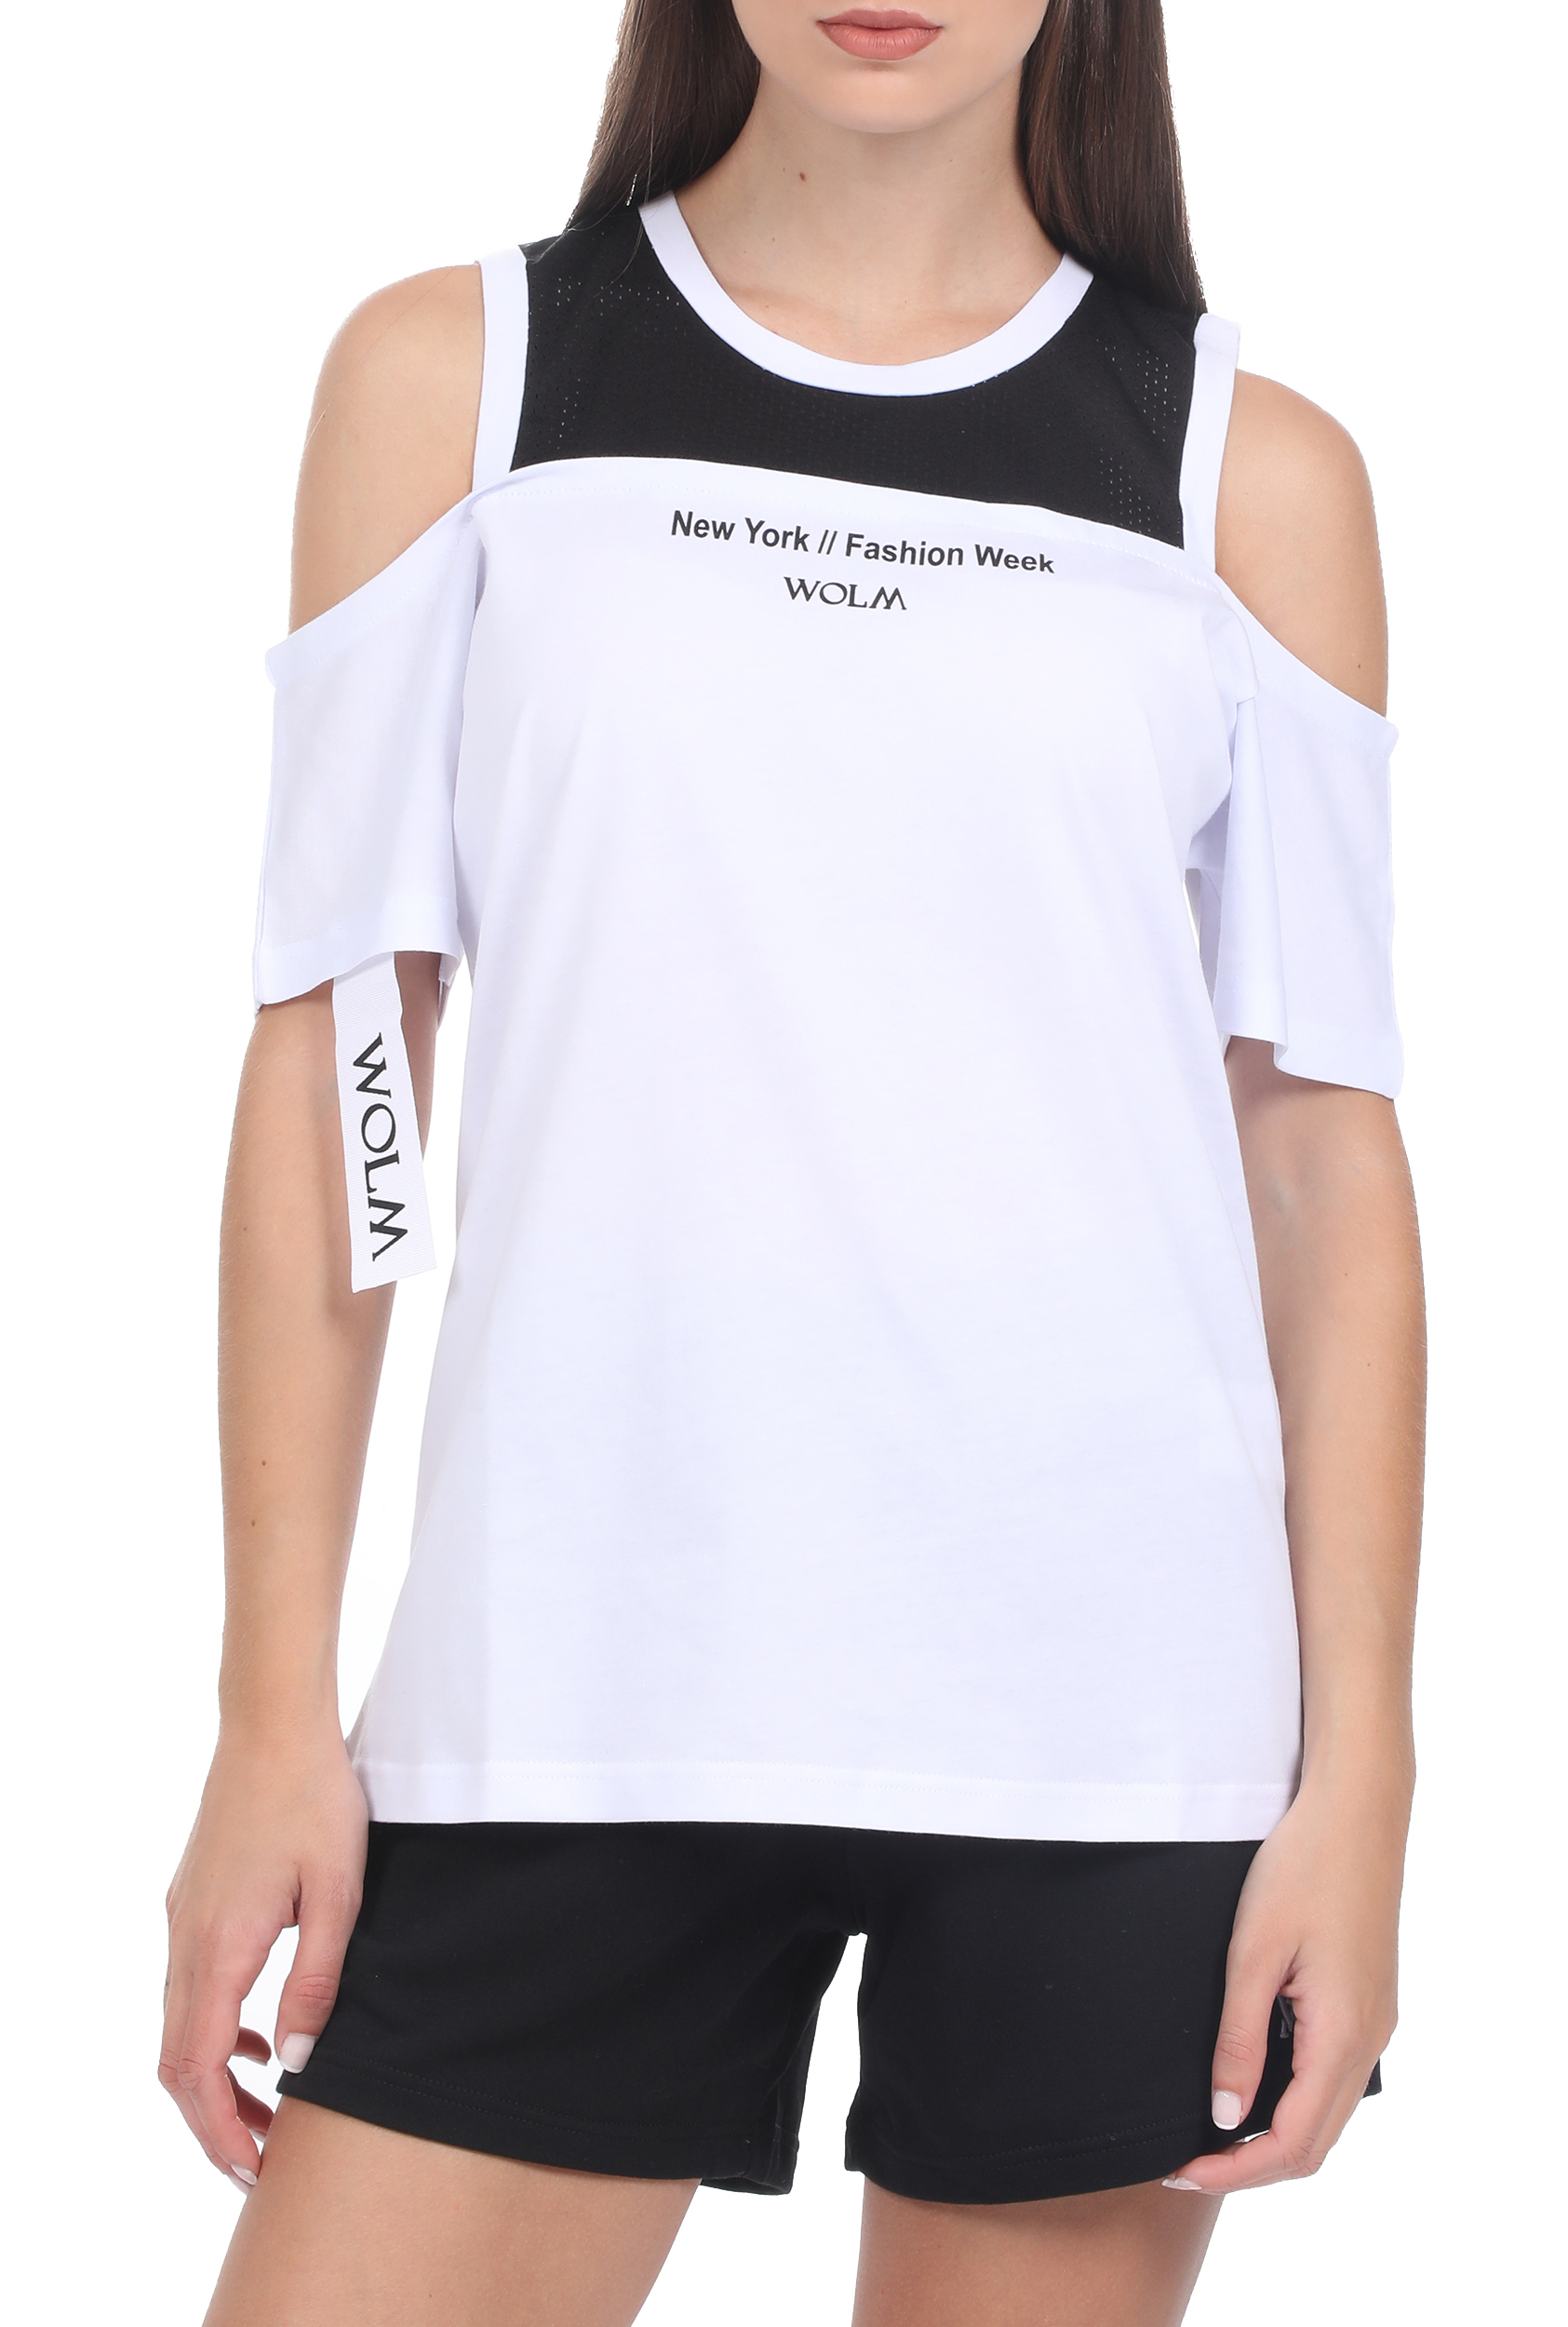 Γυναικεία/Ρούχα/Μπλούζες/Κοντομάνικες WOLM - Γυναικείο t-shirt WOLM μαύρο λευκό